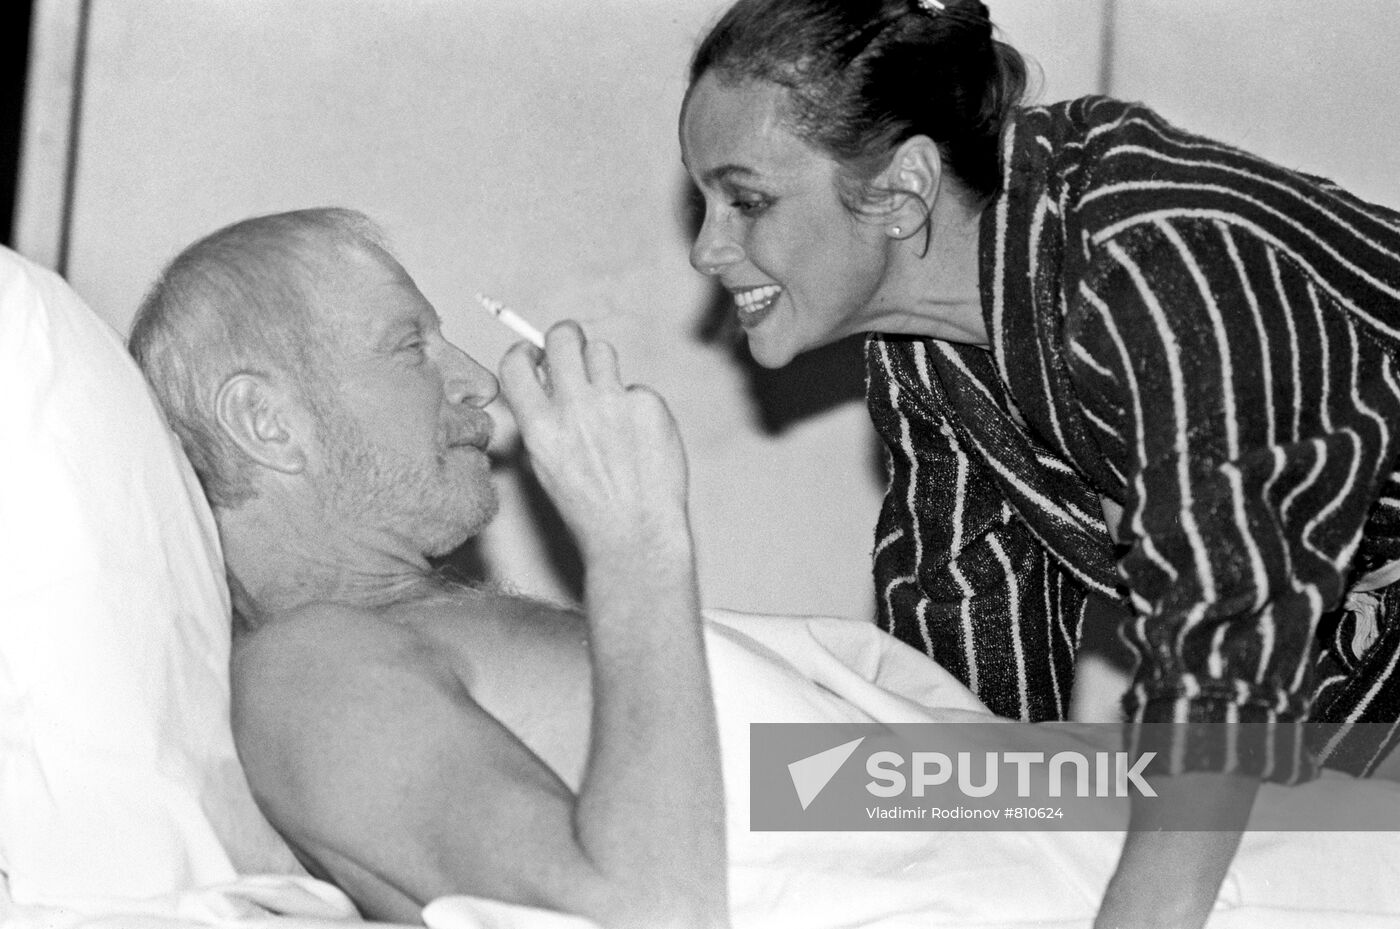 Semyon Zlotnilkov's A Man Visiting a Woman